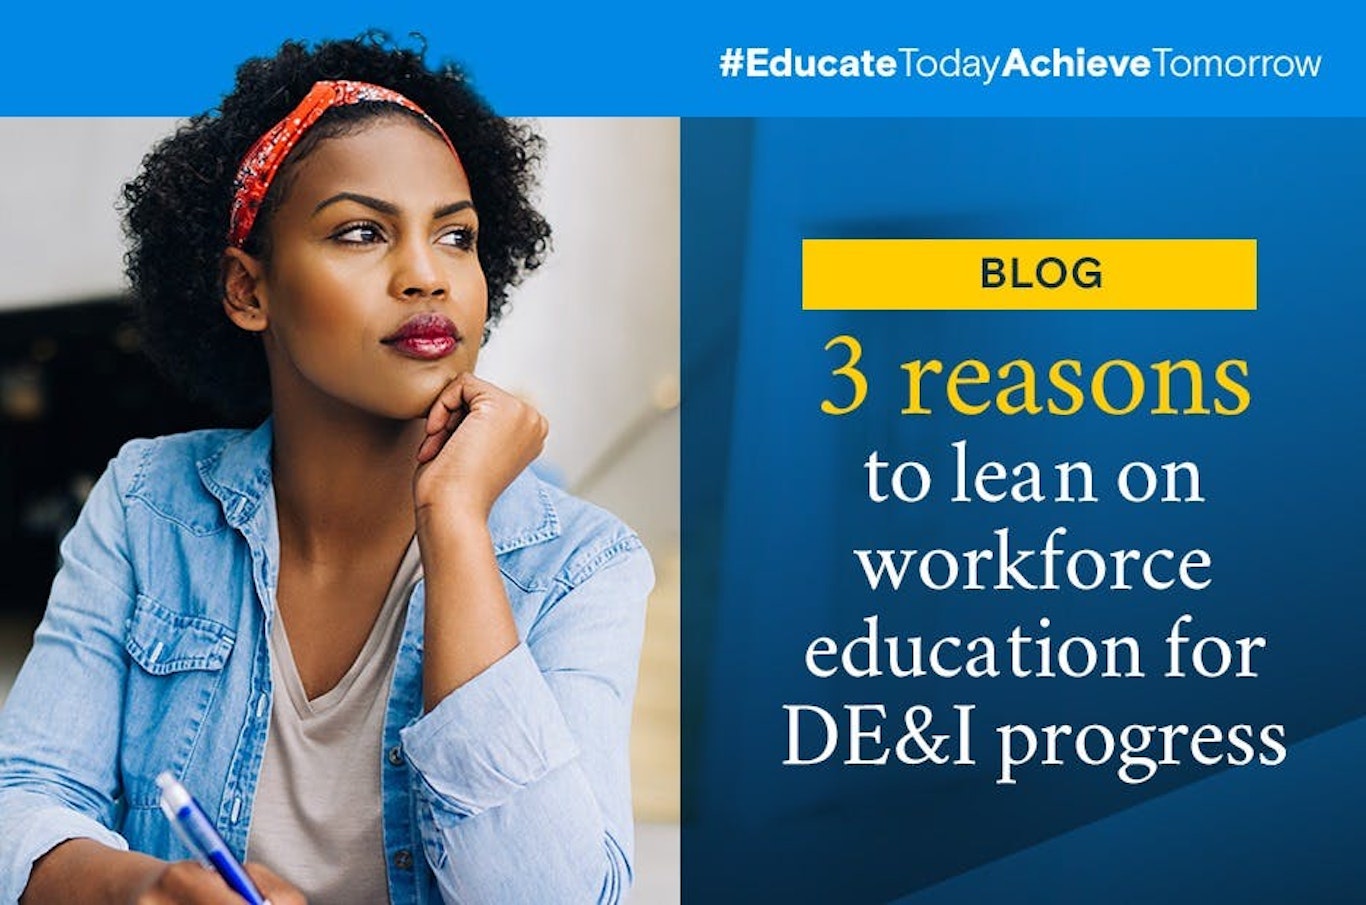 workforce education for DEI progress